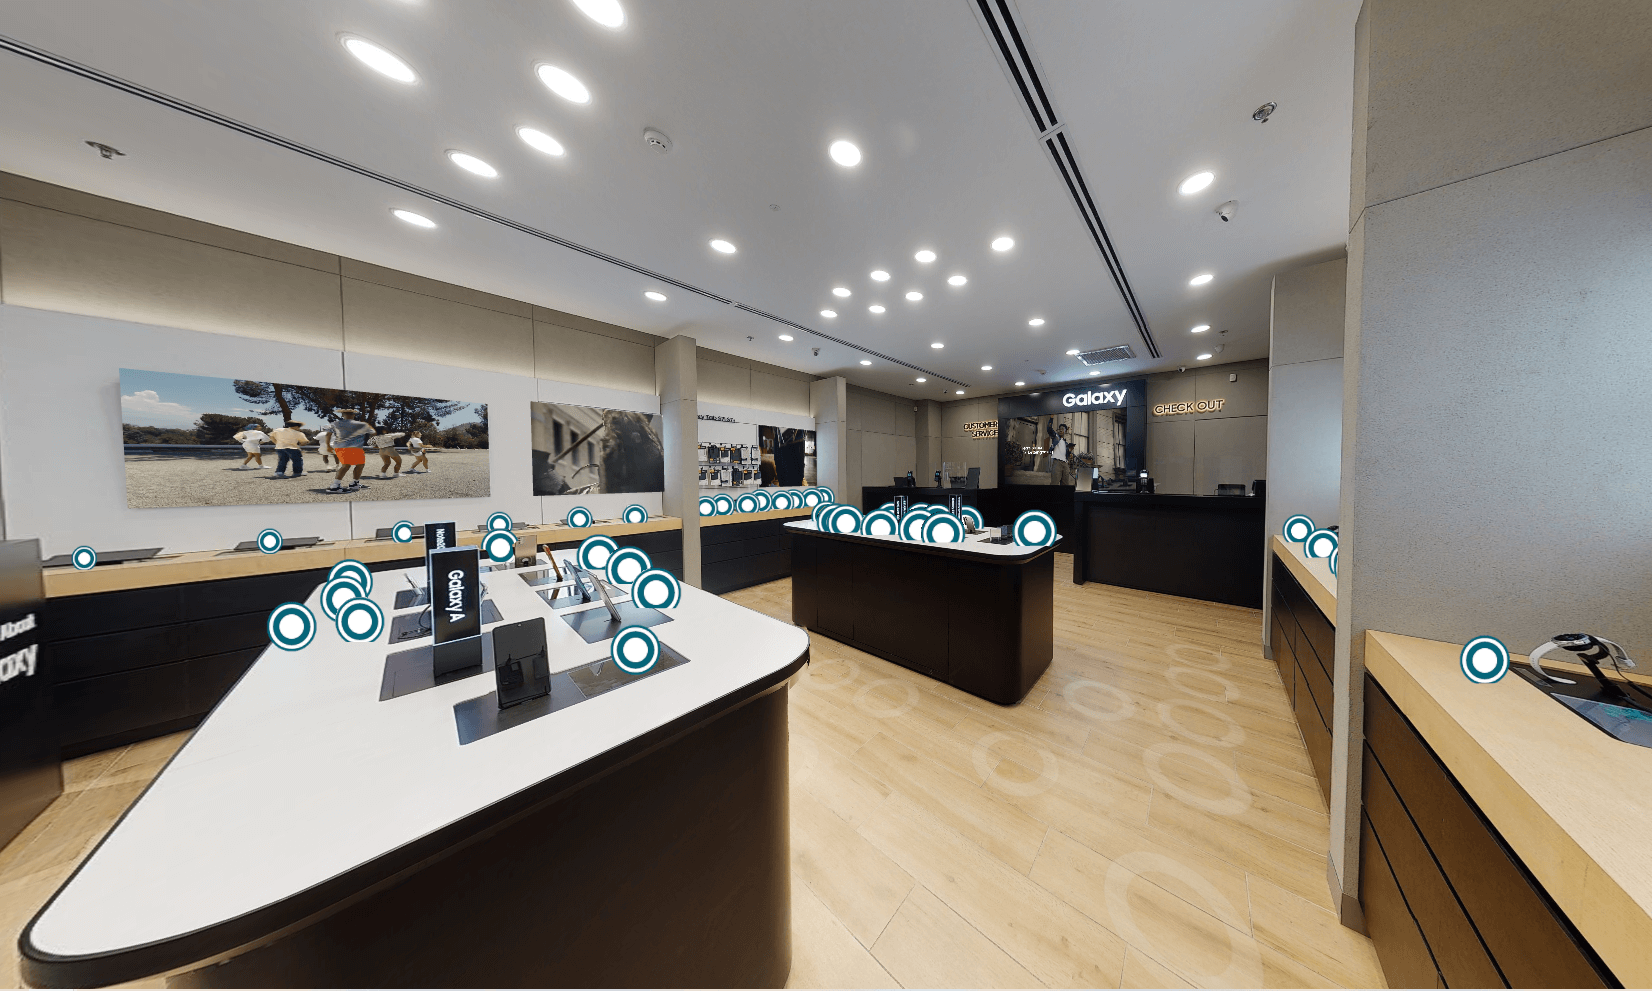 Samsung открывает новый виртуальный магазин 360°